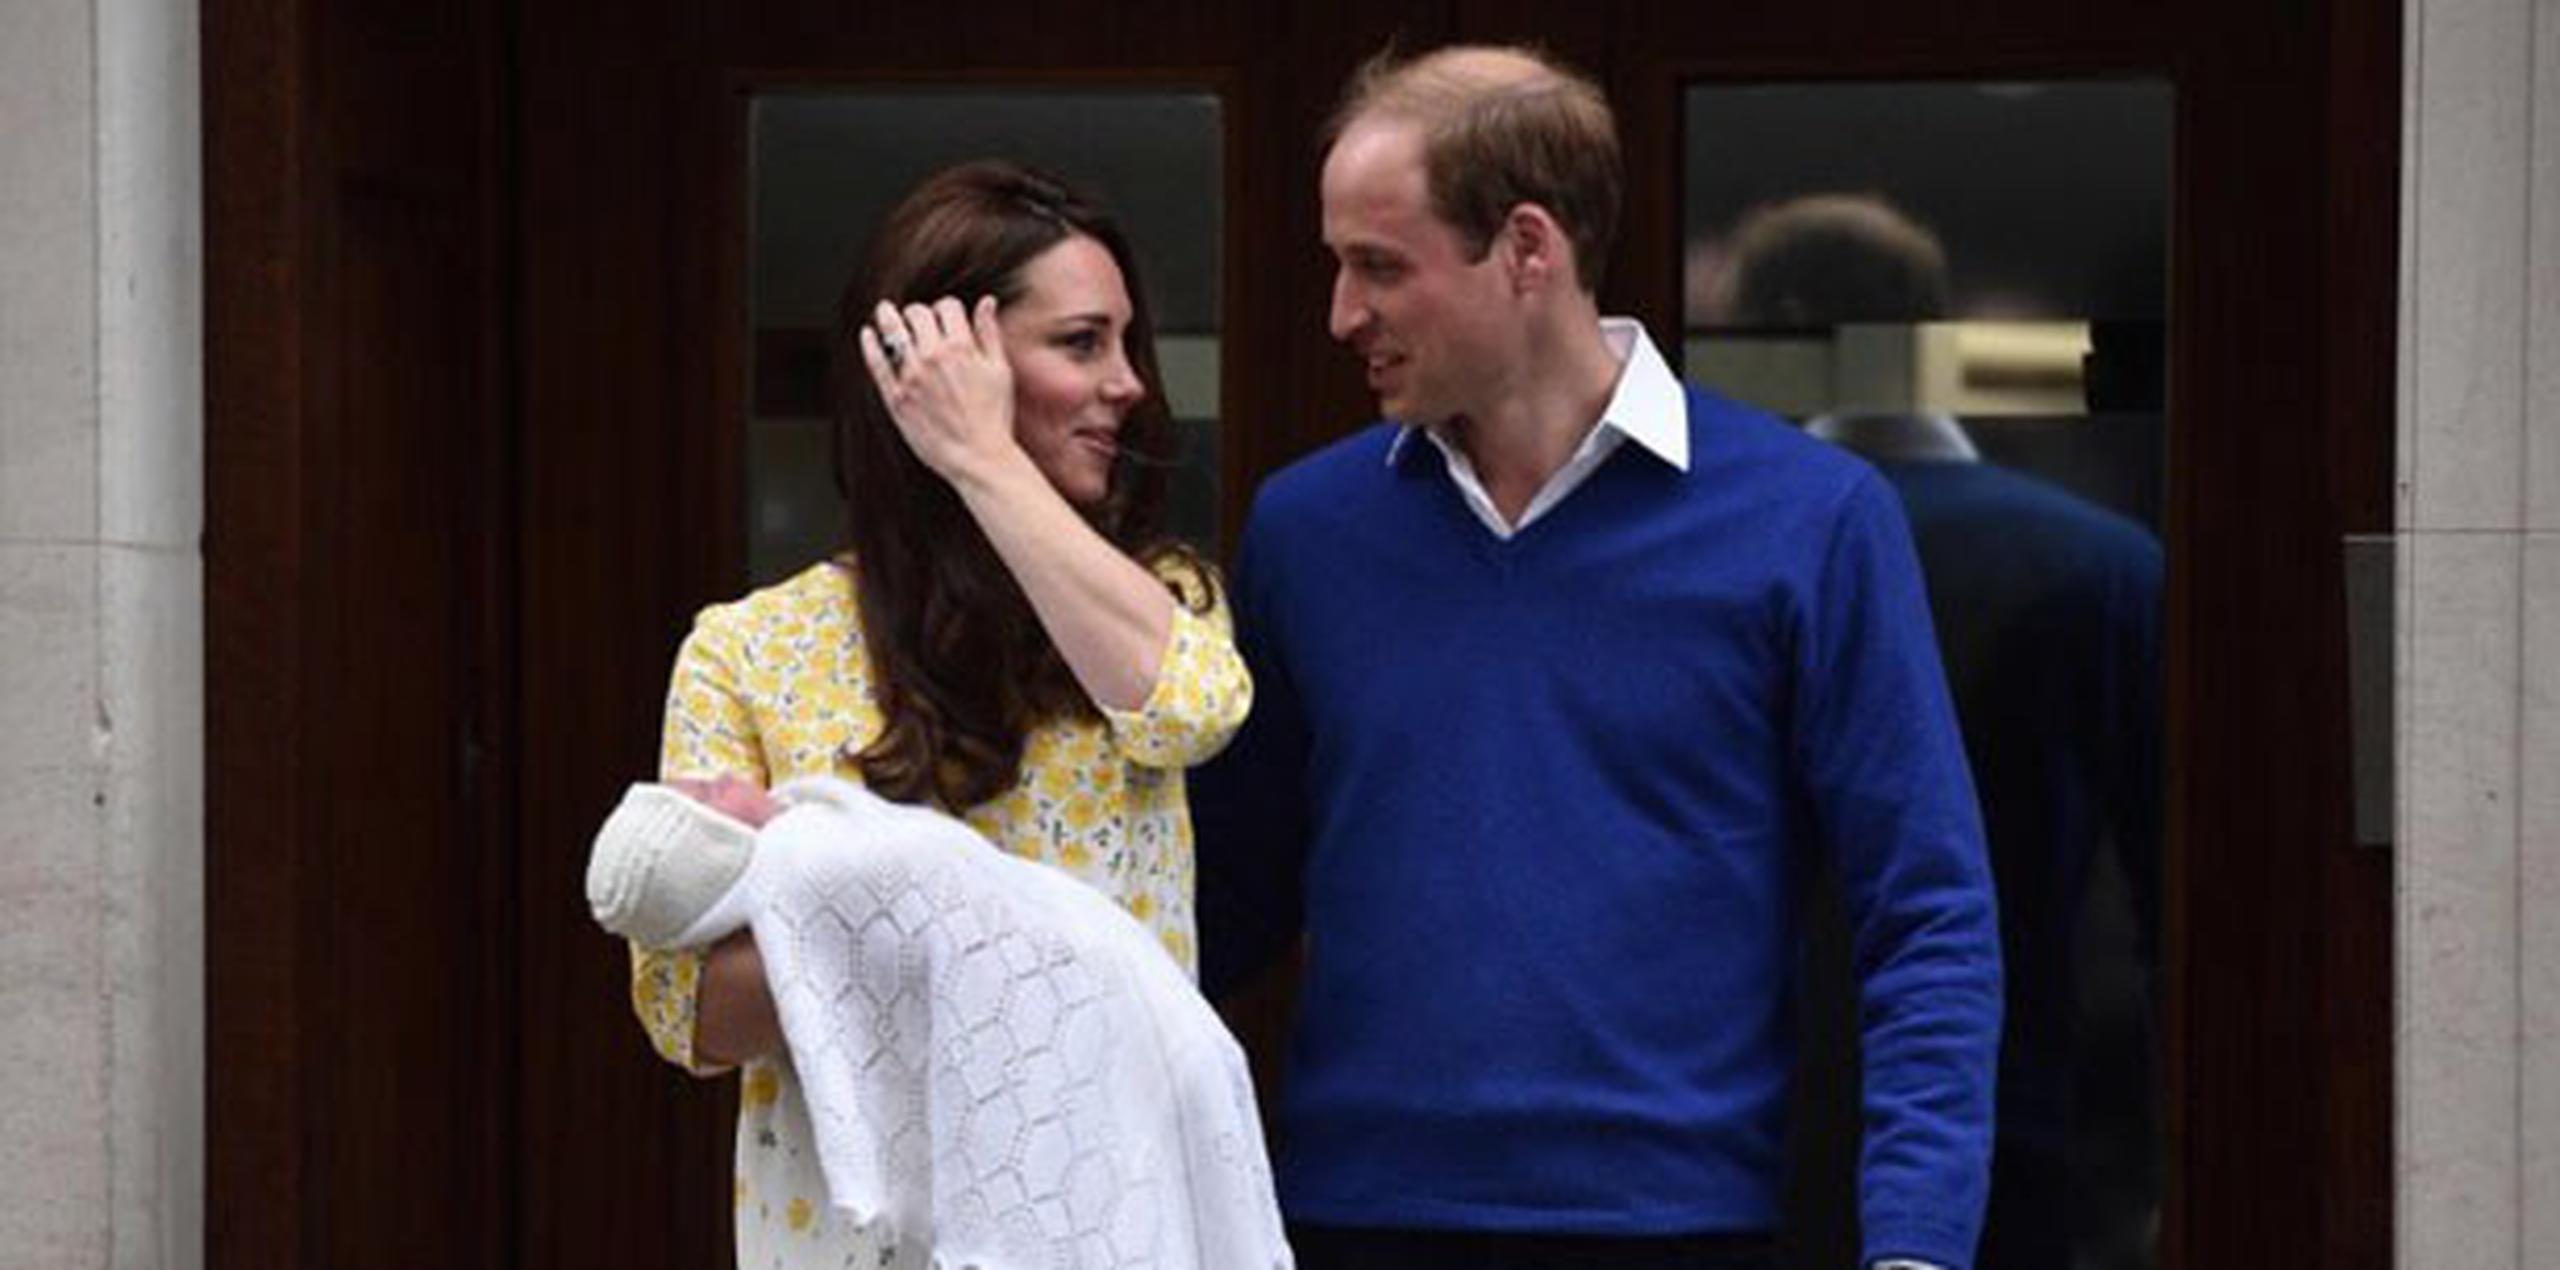 La bebé es la cuarta en la línea de sucesión al trono británico tras su abuelo, el príncipe Carlos, su padre Guillermo y su hermano, el príncipe Jorge. (AFP PHOTO / LEON NEAL)